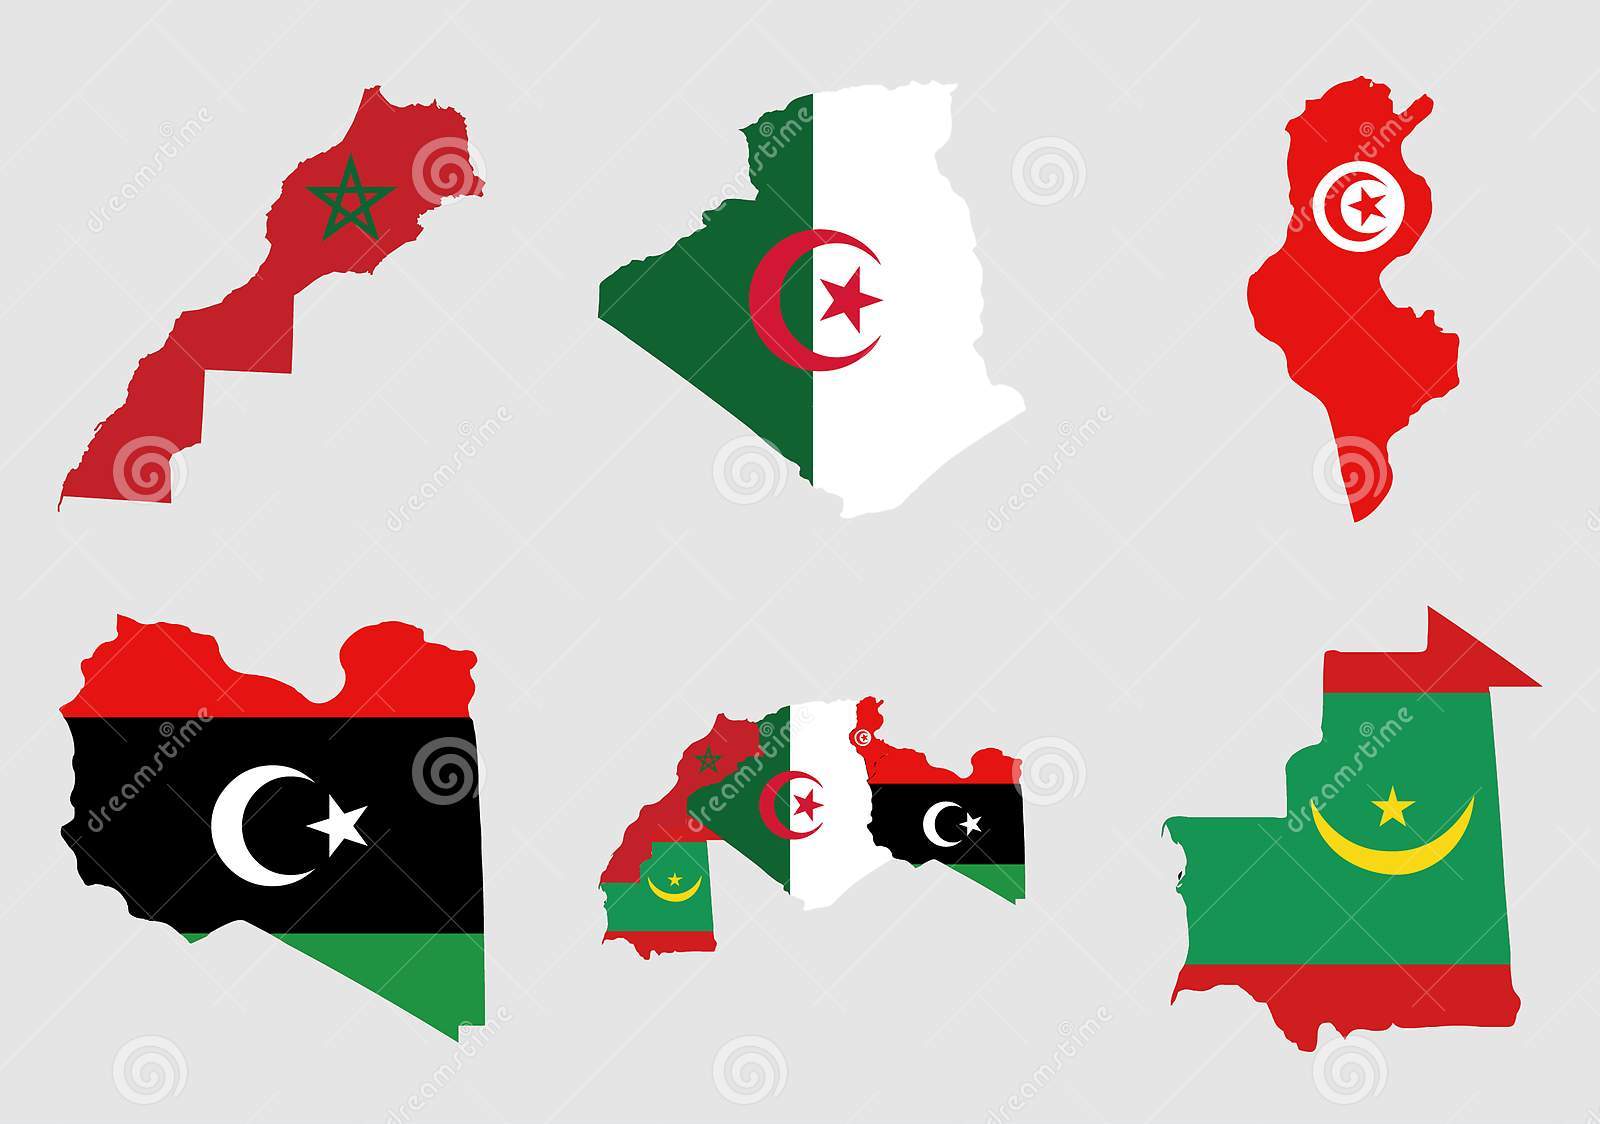 Les pays du Maghreb, comme les cinq doigts d'une main